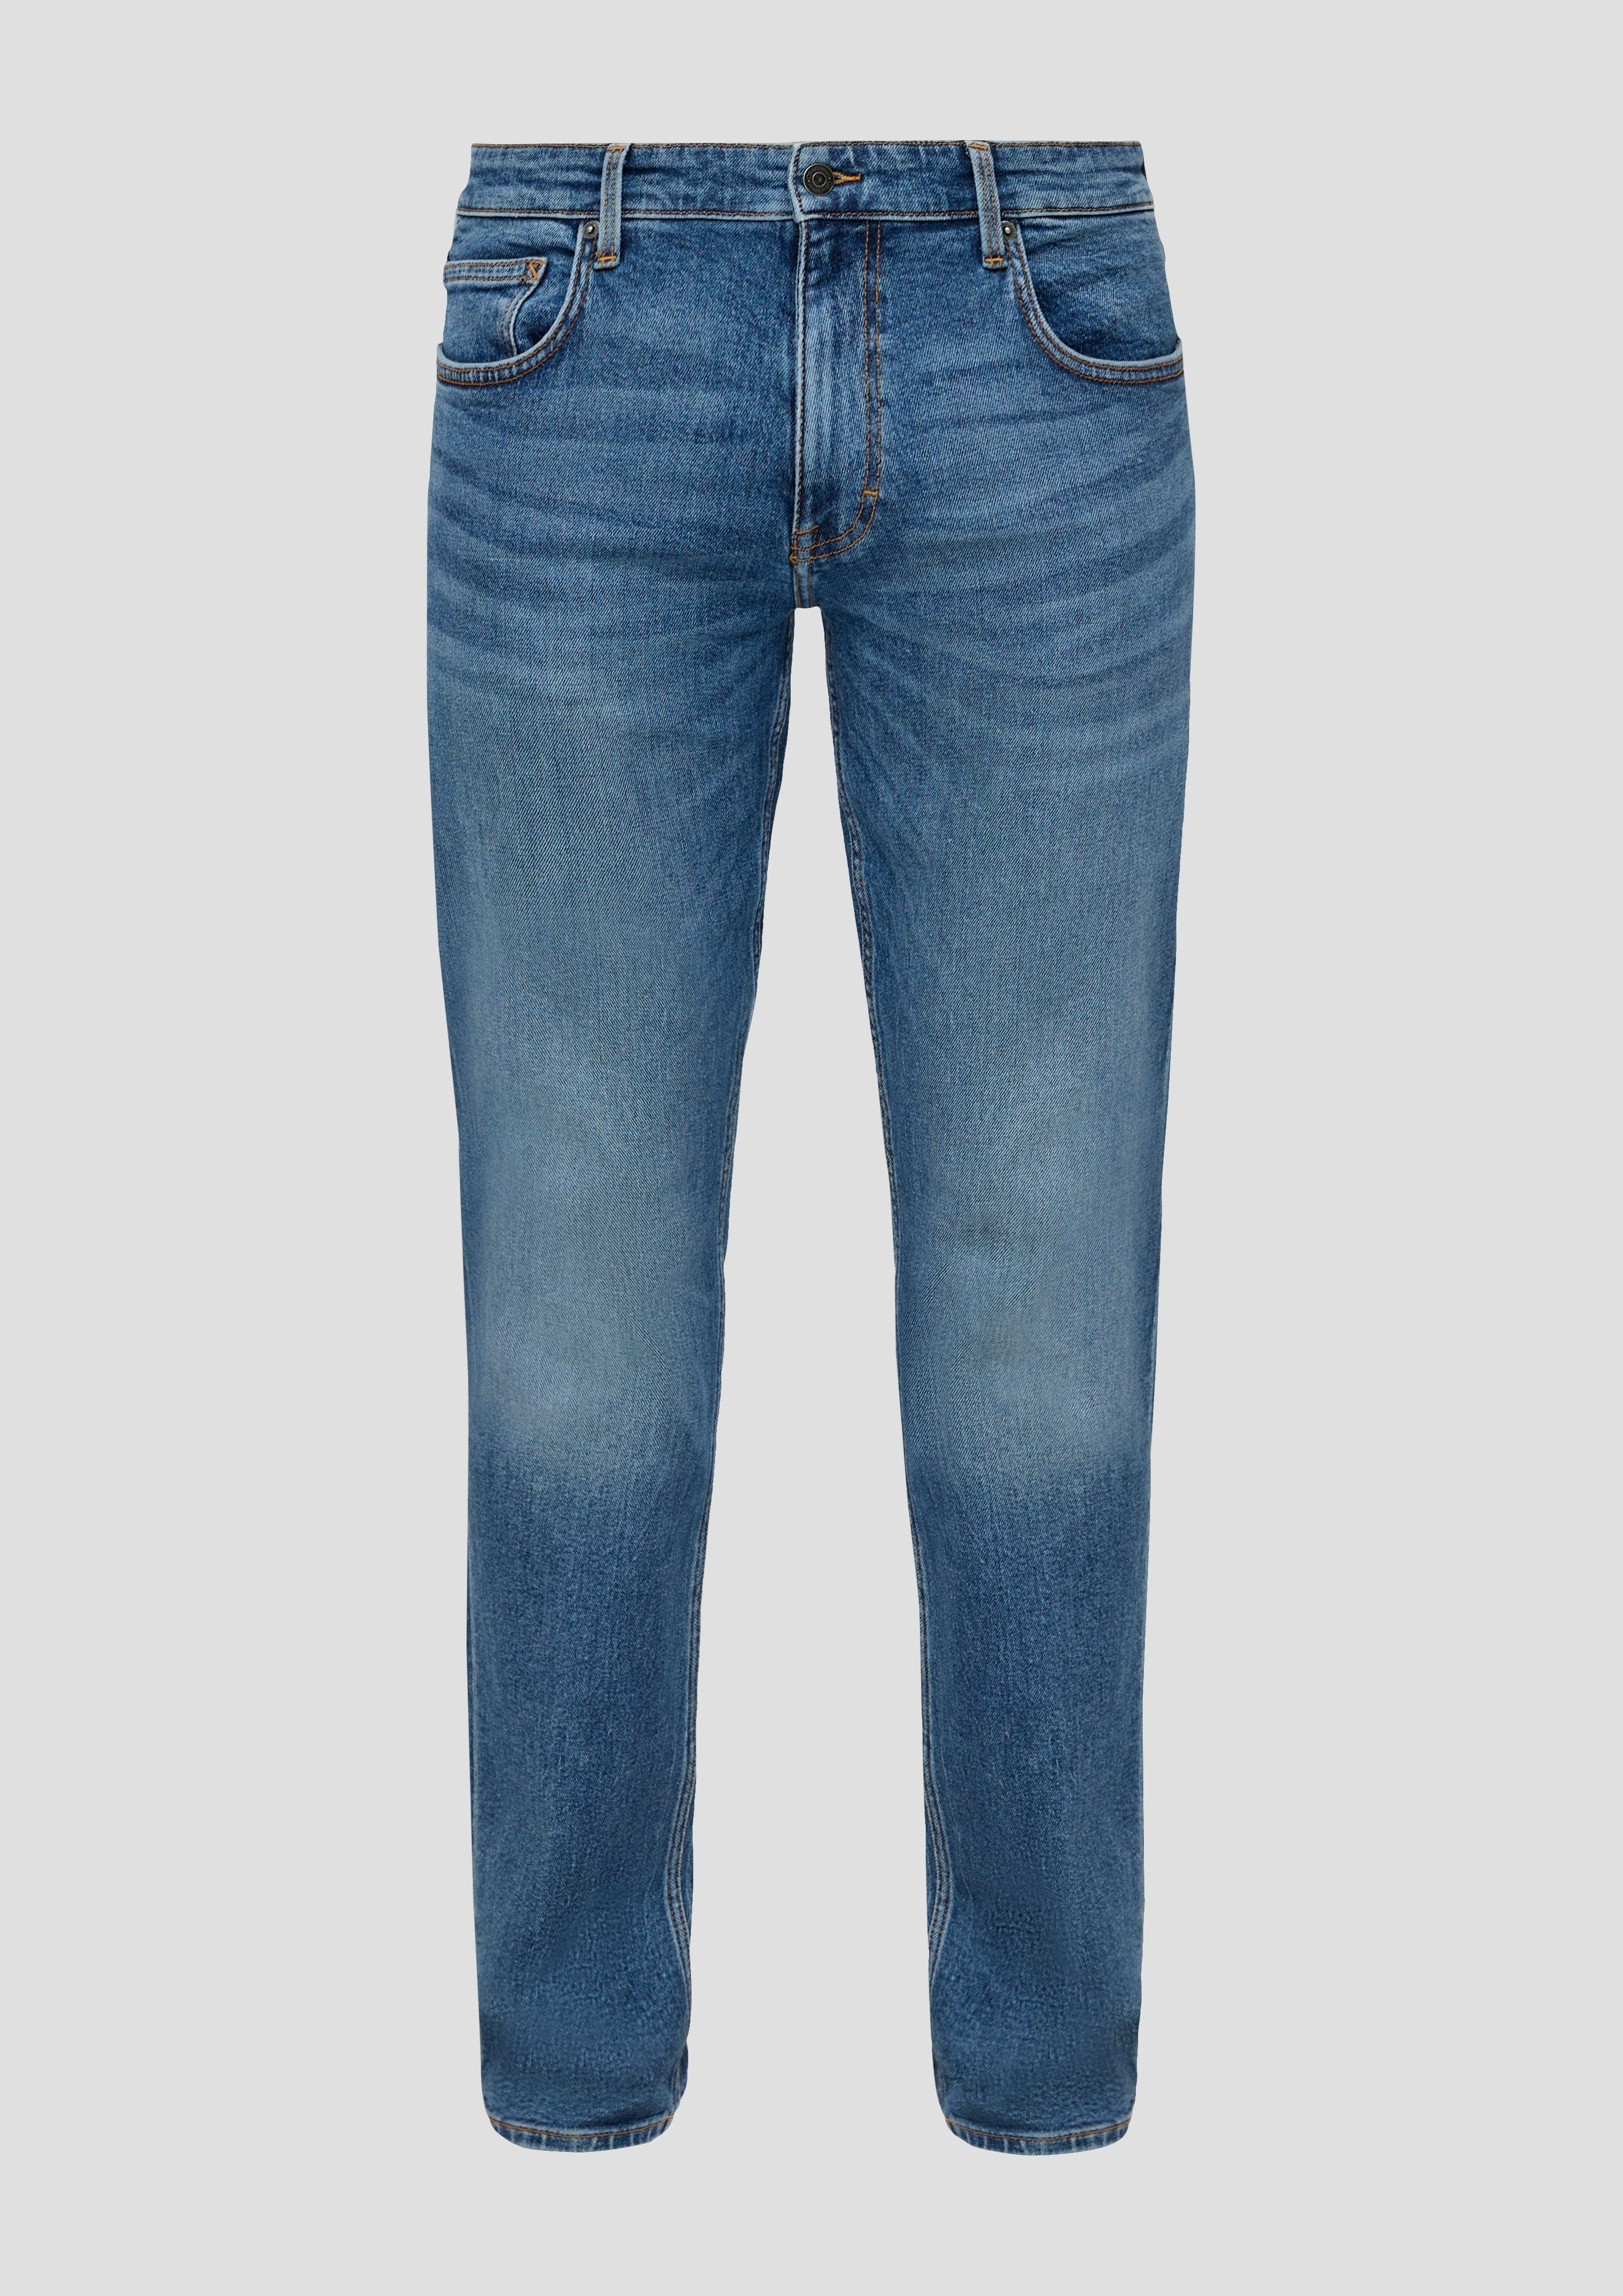 QS Nahtdesign mit Jeans Bequeme Gesäßtaschen blue den an 34